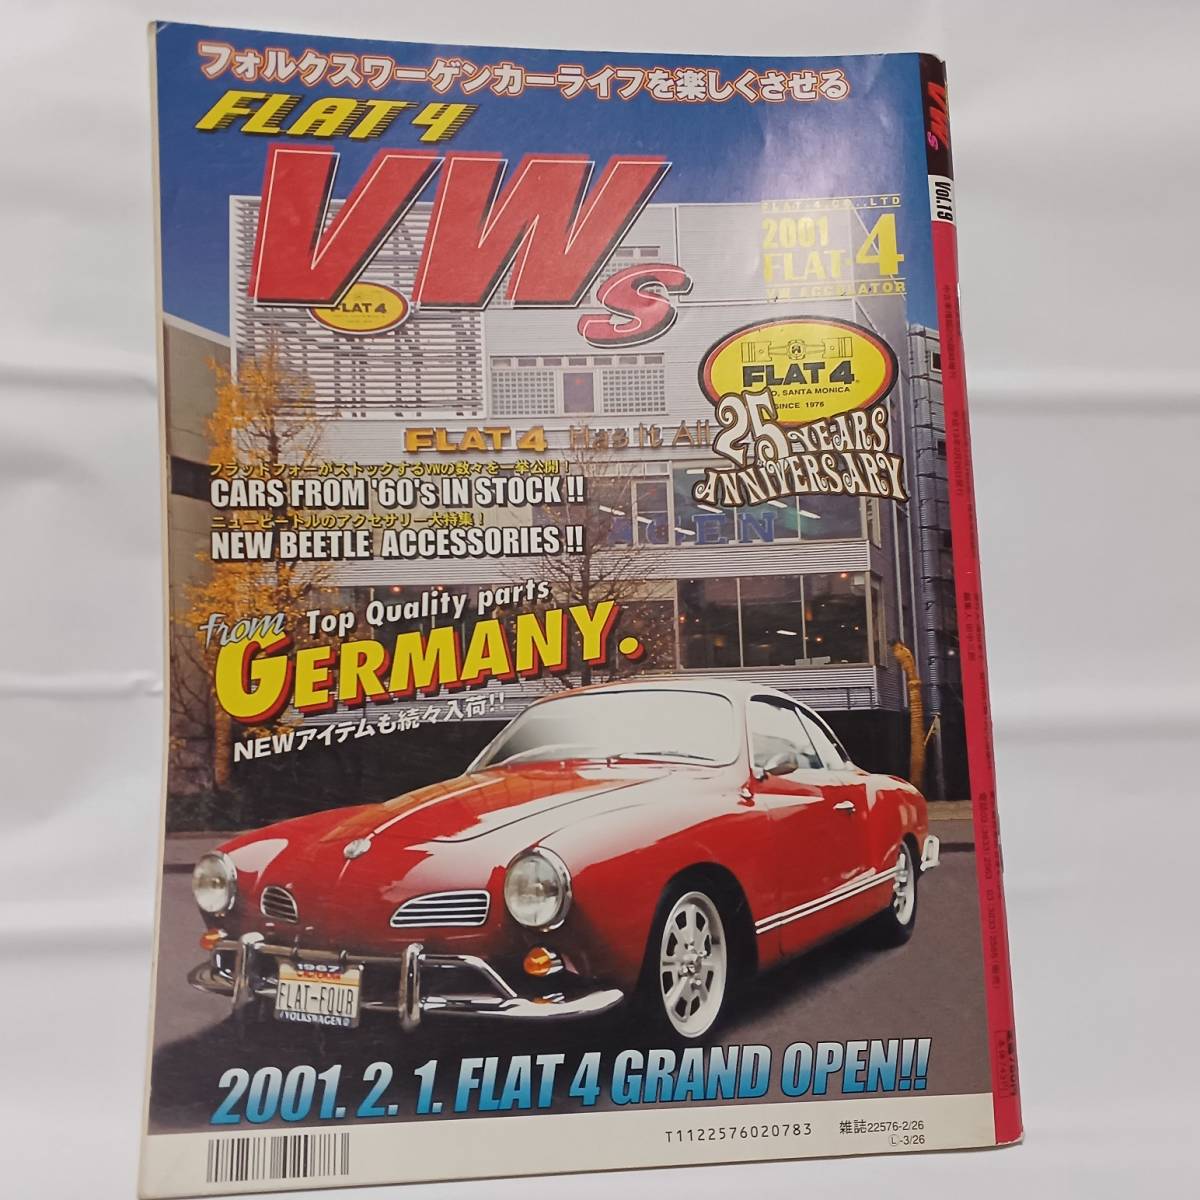 ★雑誌 STREET VWs ストリート ワーゲン vol.19 2001年 ワーゲン ビートル VW BEETLE TYPE.1.2.3_画像2